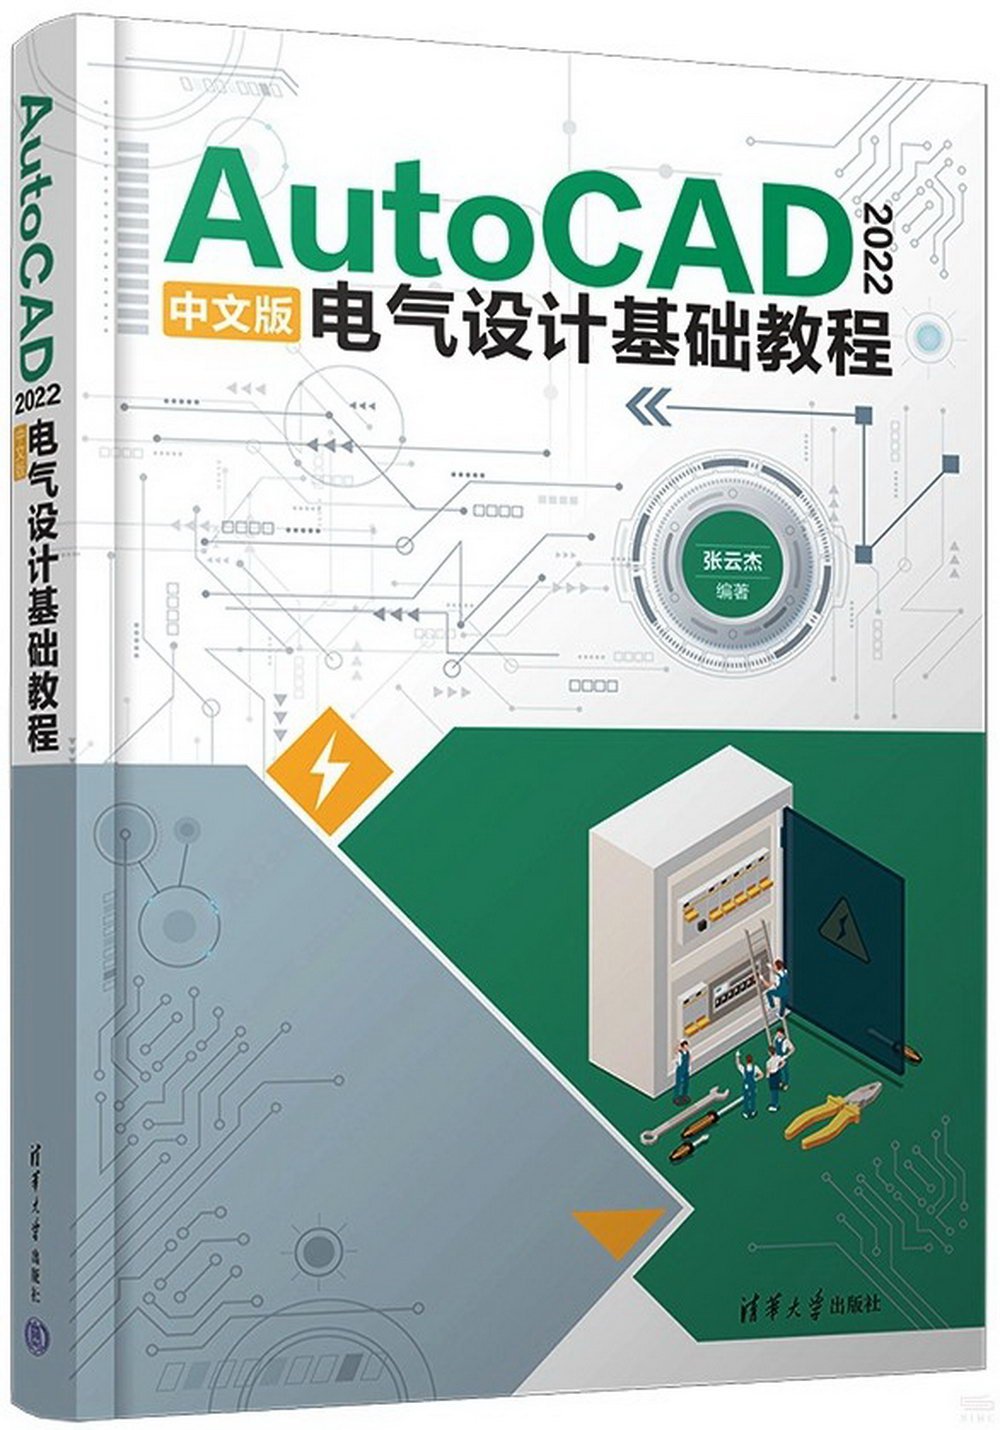 AutoCAD 2022中文版電氣設計基礎教程